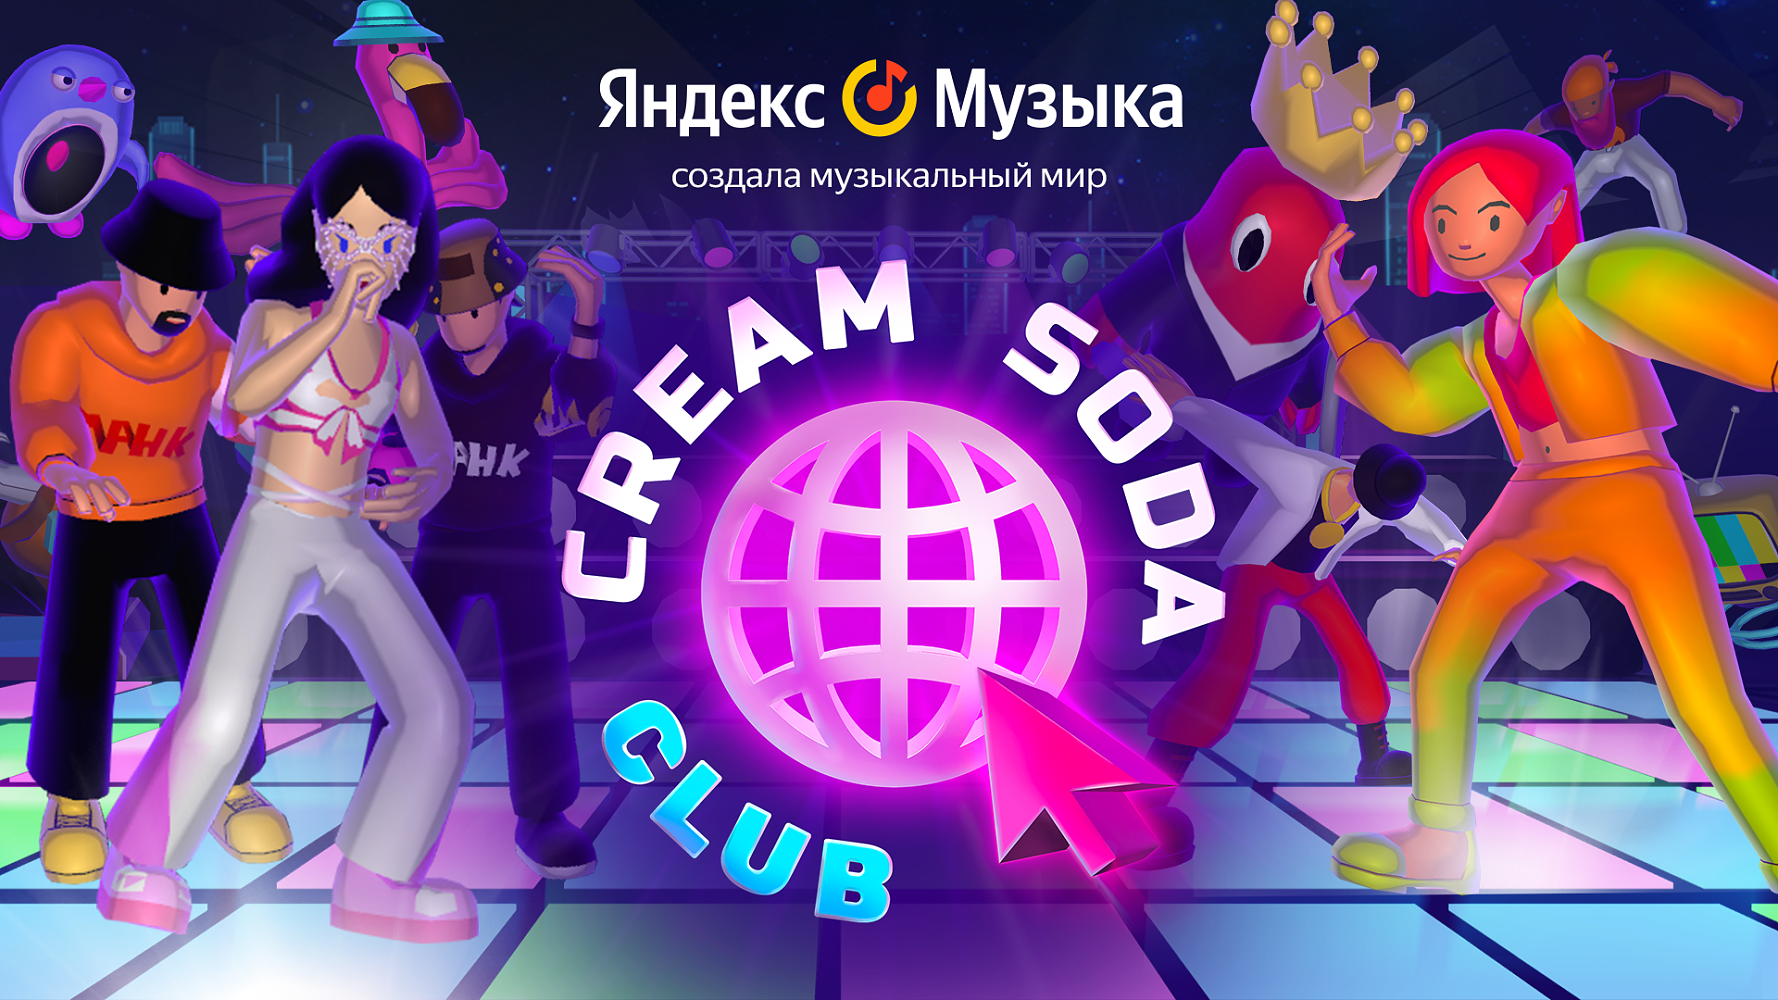 Cream Soda Club